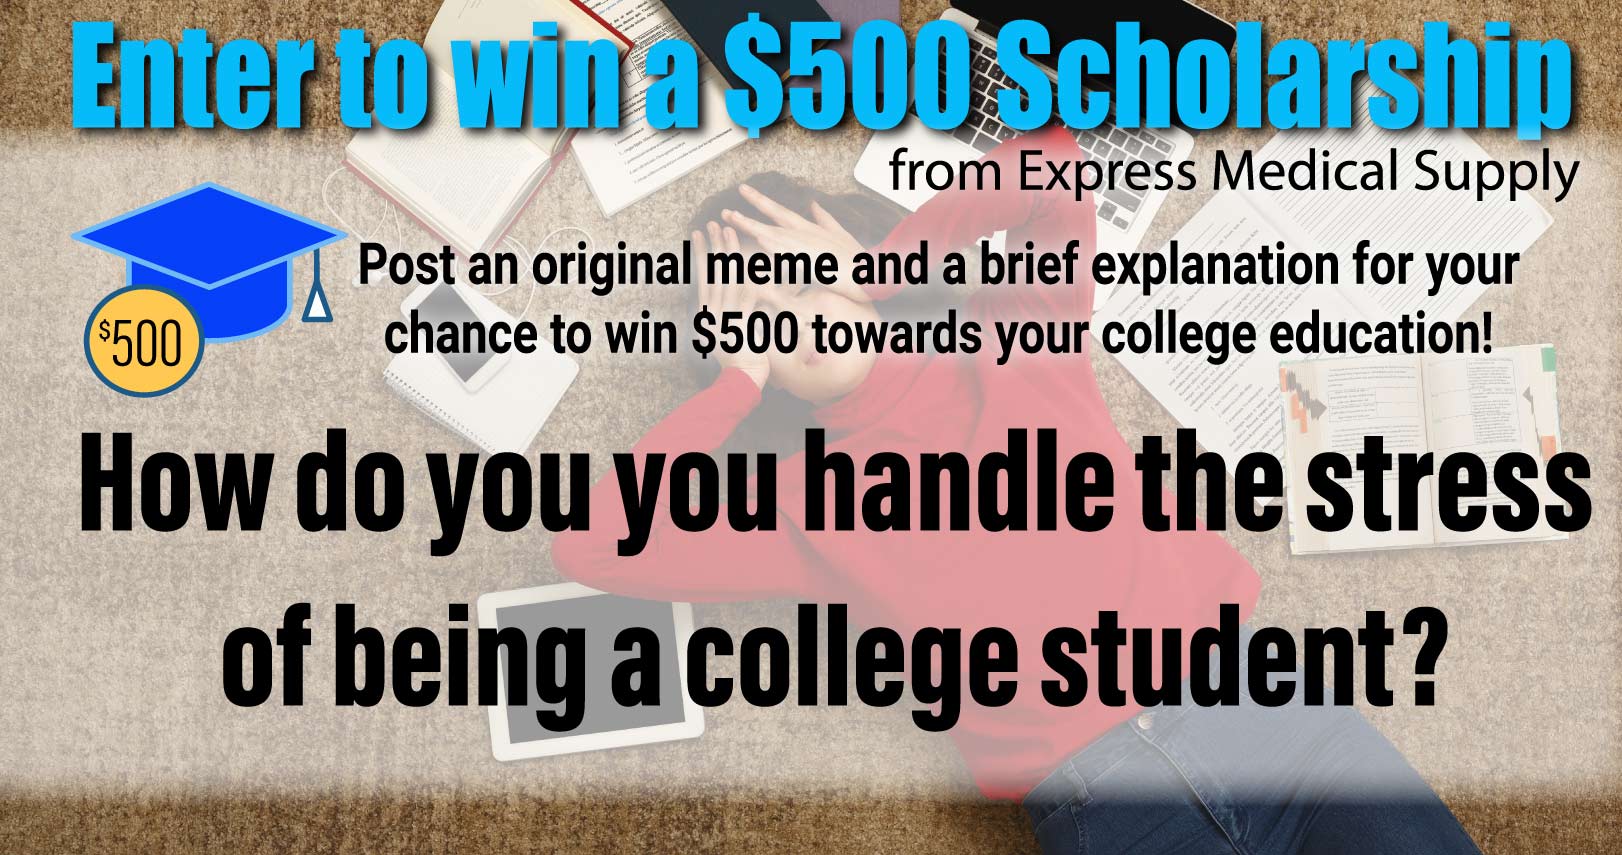 Express Scholarship